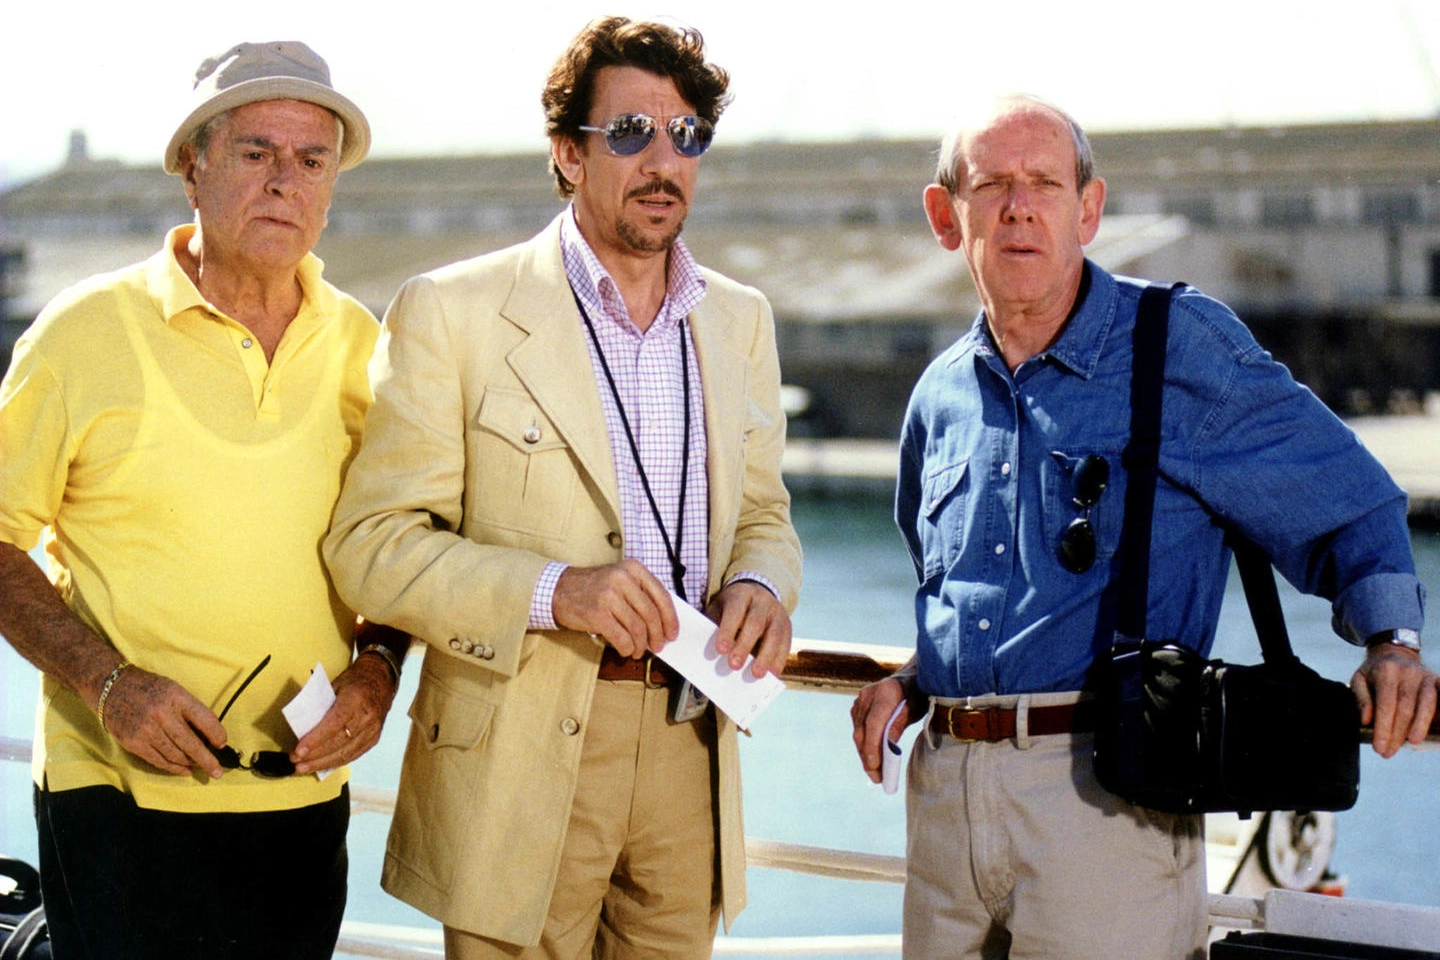 Raffaele Pisu, Marco Columbro ed Enzo Garinei in una scena del film tv 'Non ho l'età 2'